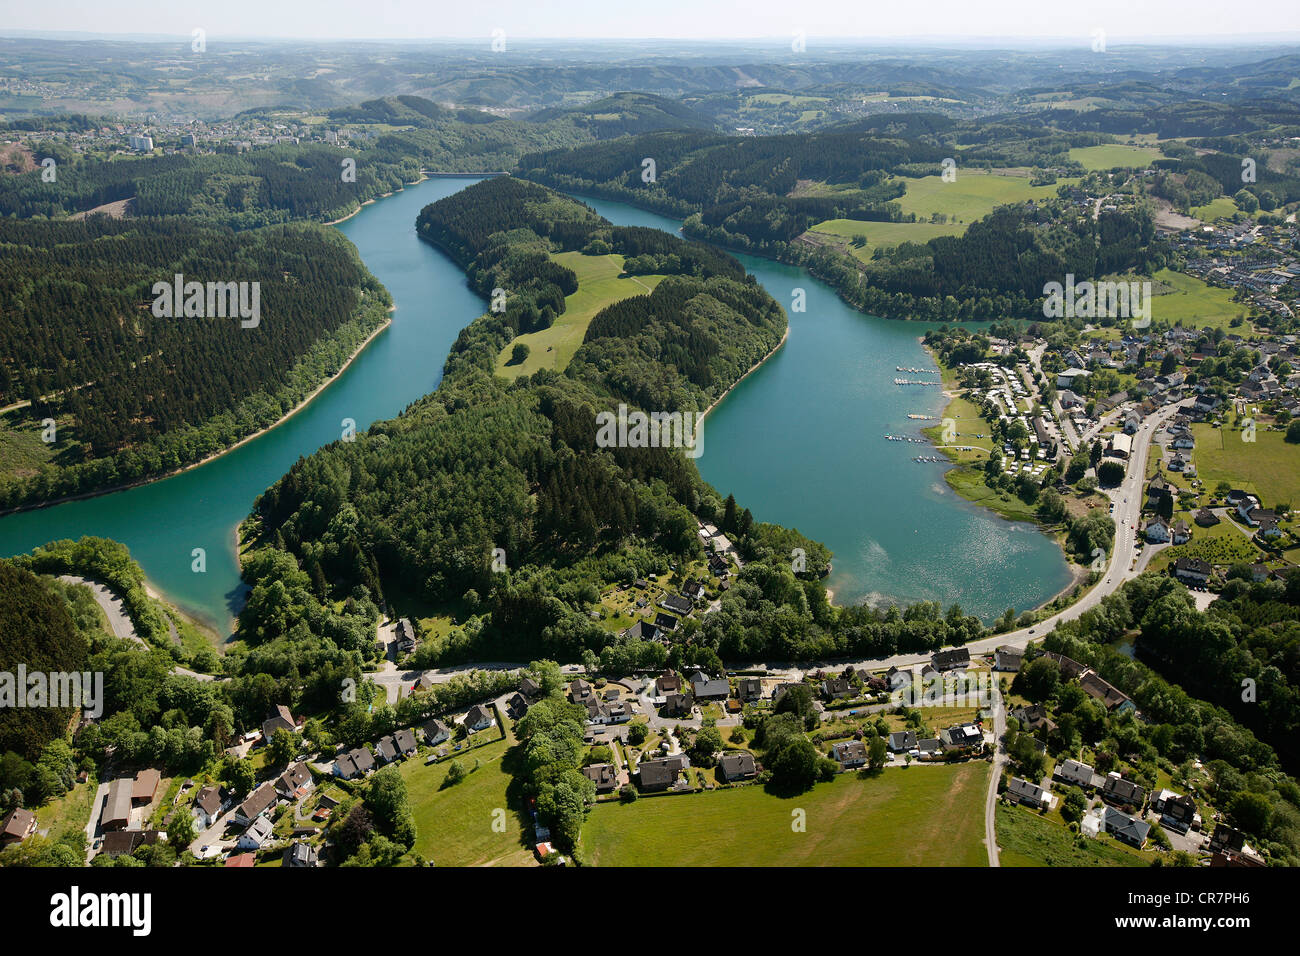 Vista aerea, Aggertal Dam, livello dell'acqua basso, Oberbergisches Land, Renania settentrionale-Vestfalia, Germania, Europa Foto Stock